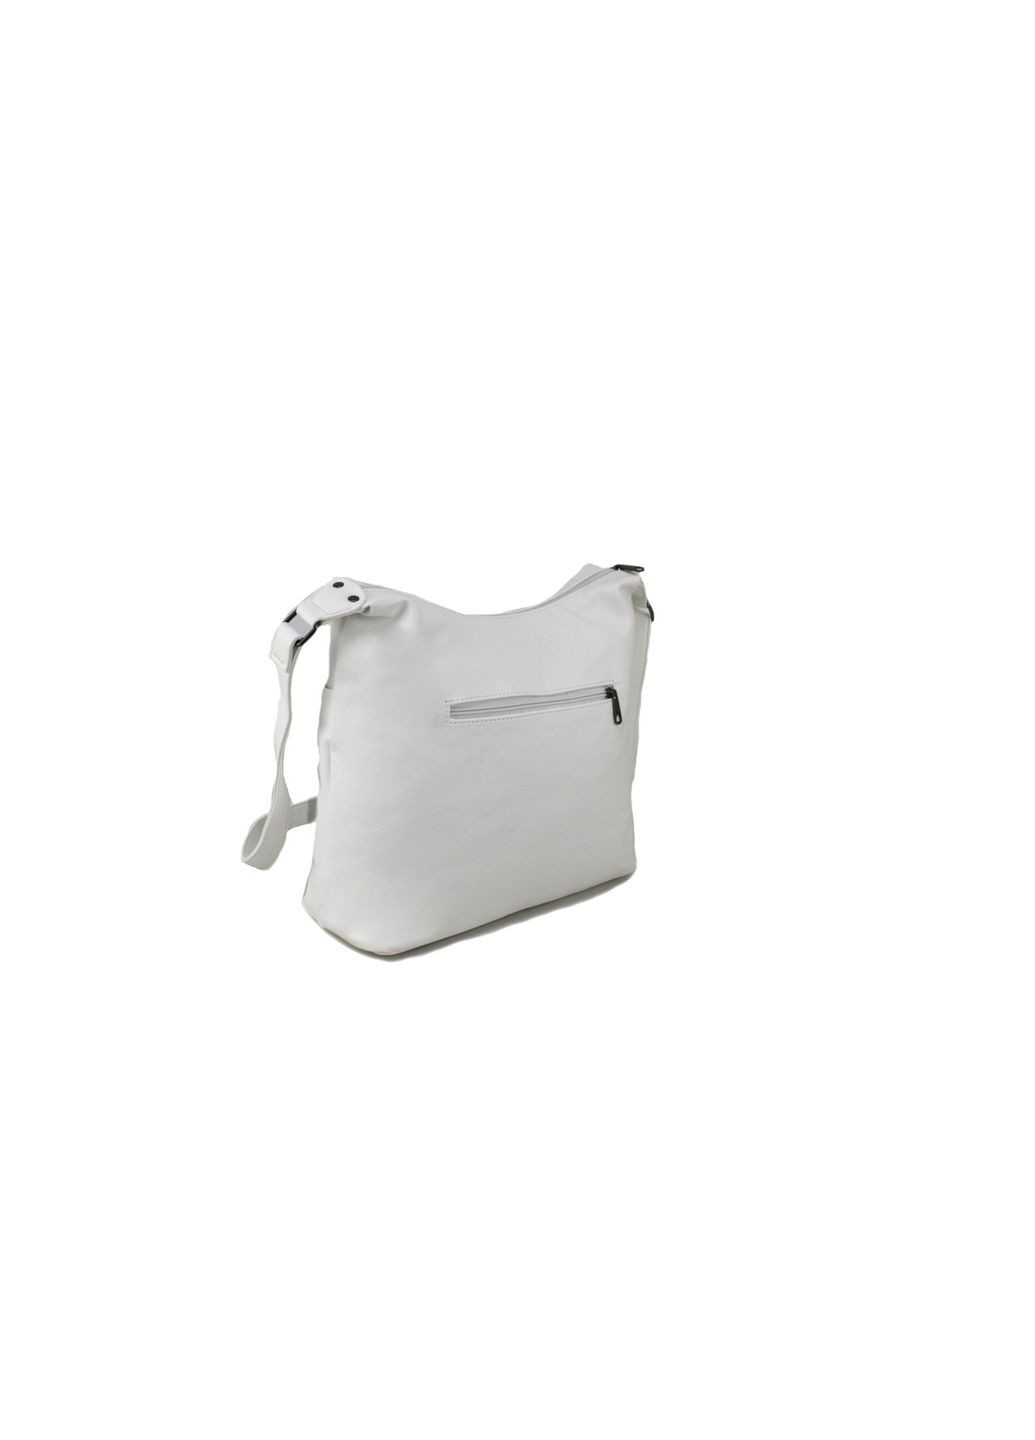 Повседневная женская сумка 0-63130 белая Voila (290193728)